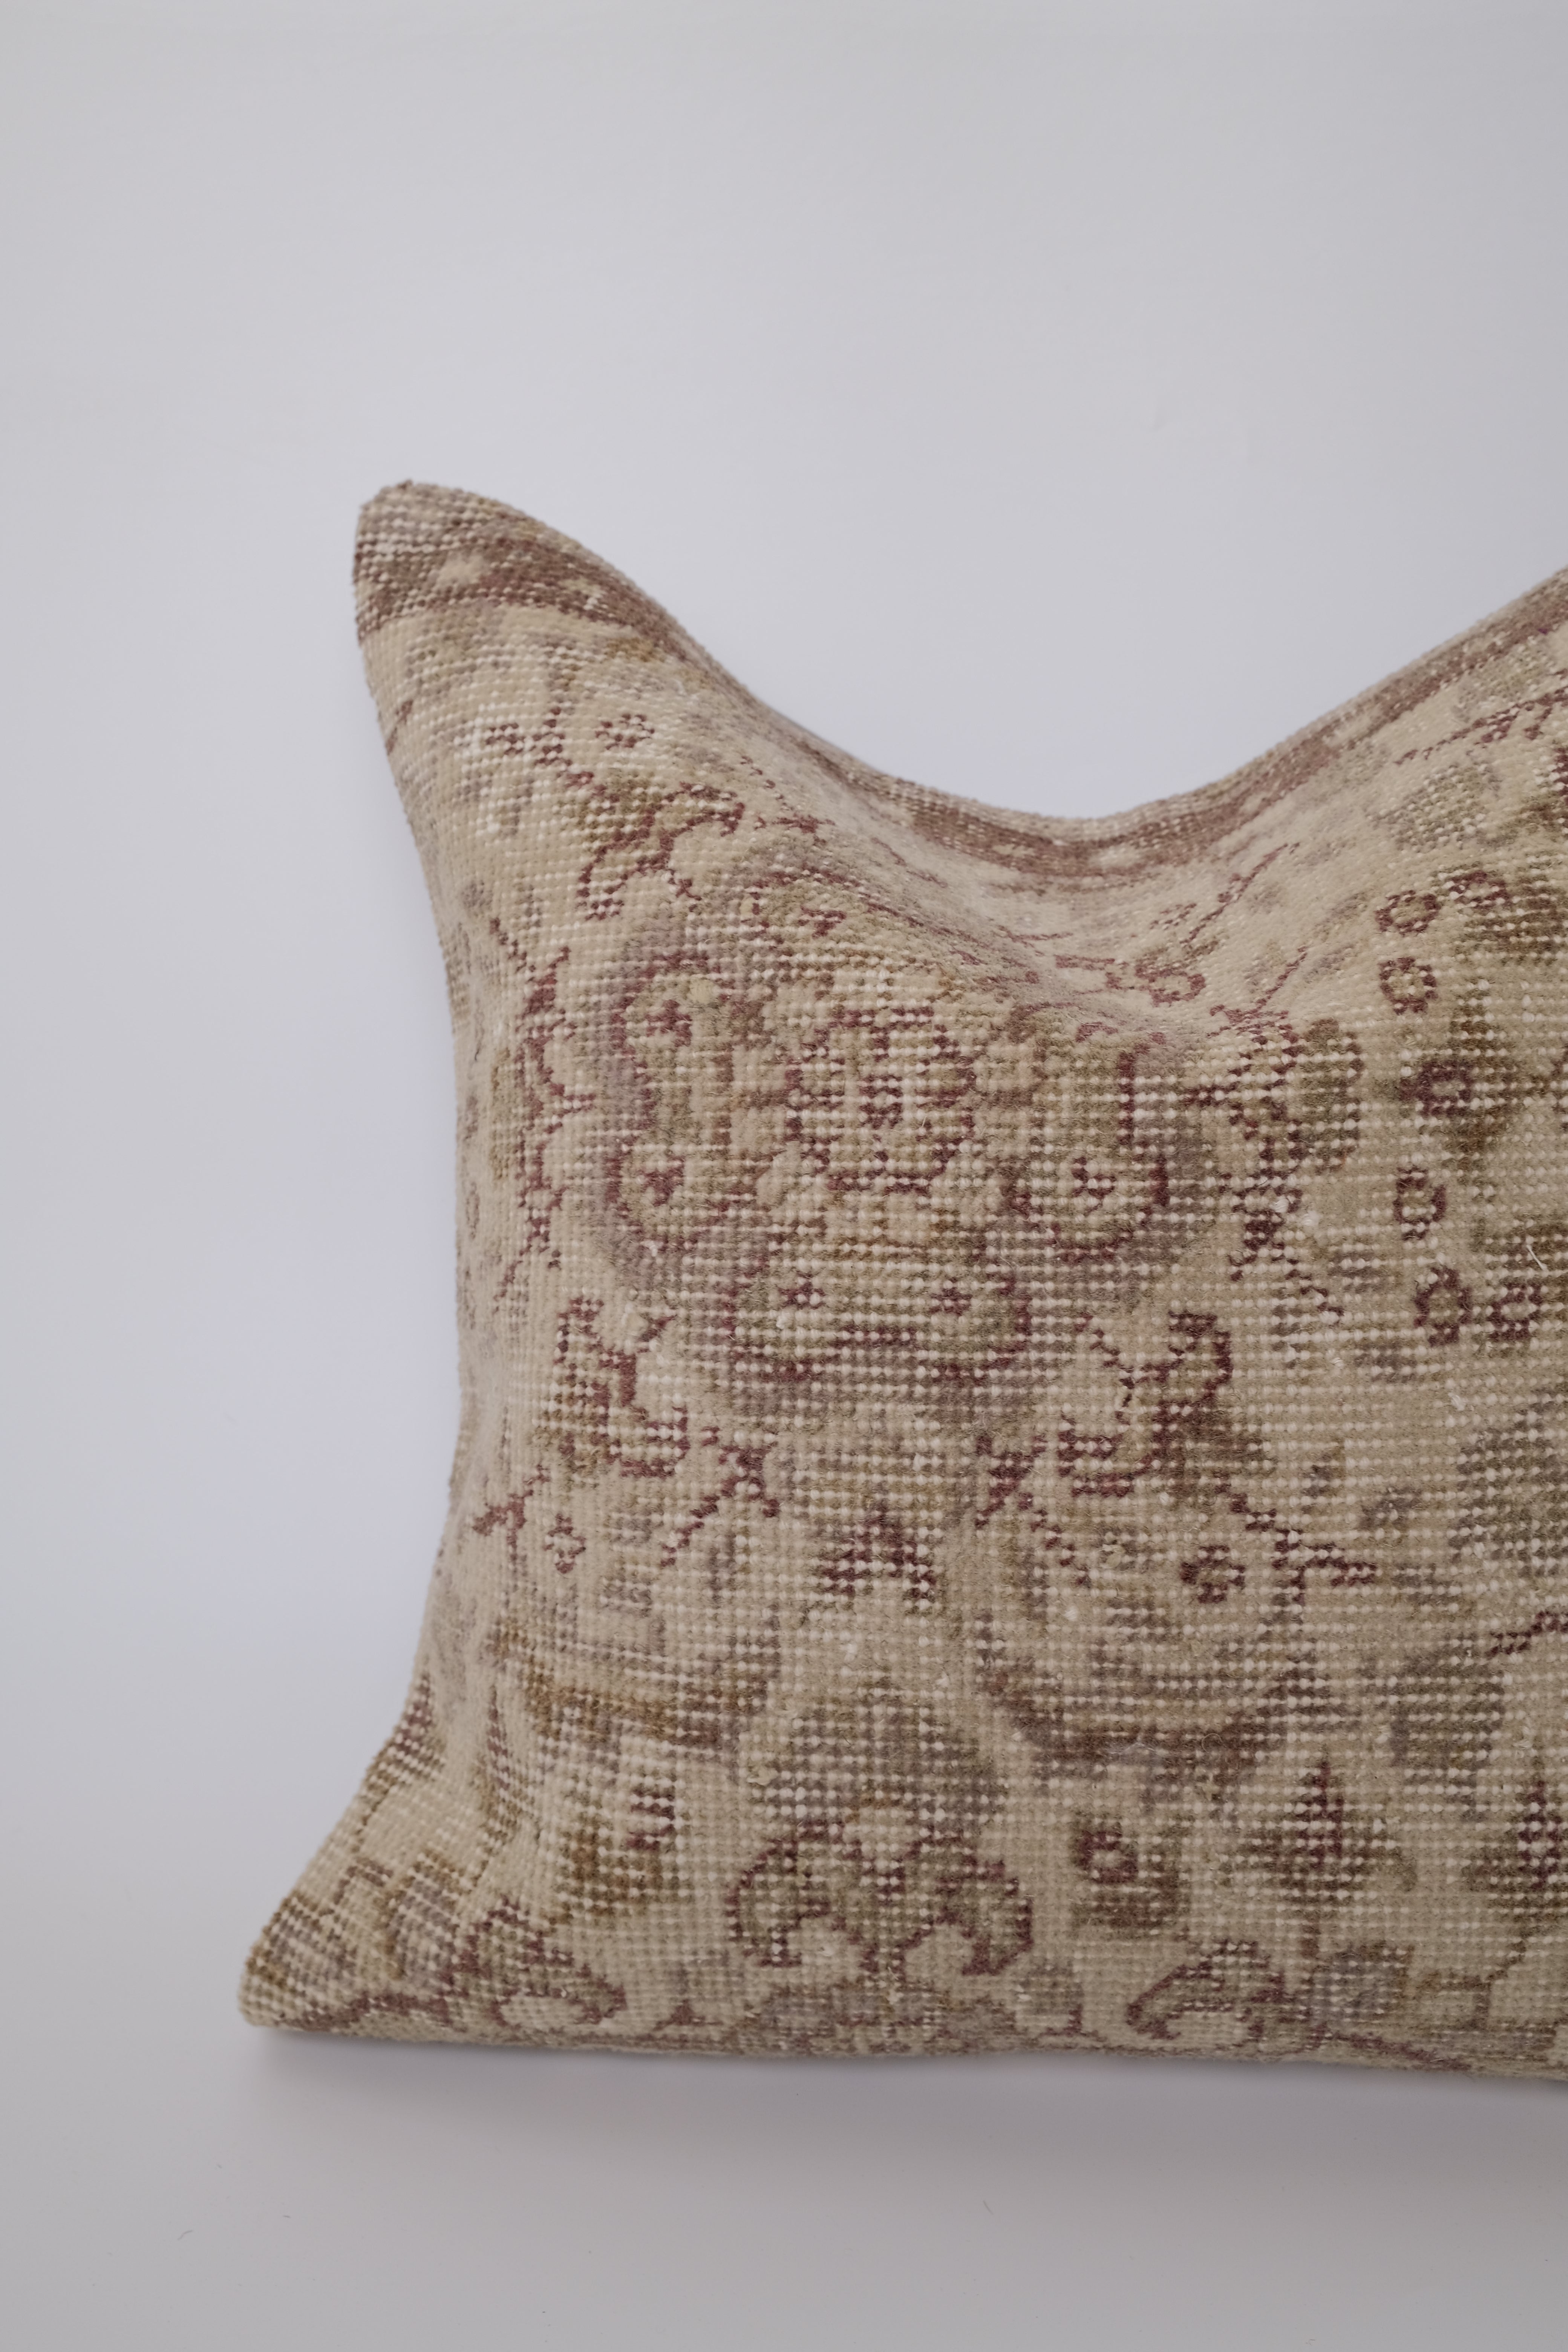 Efi Turkish Vintage Rug Pillow